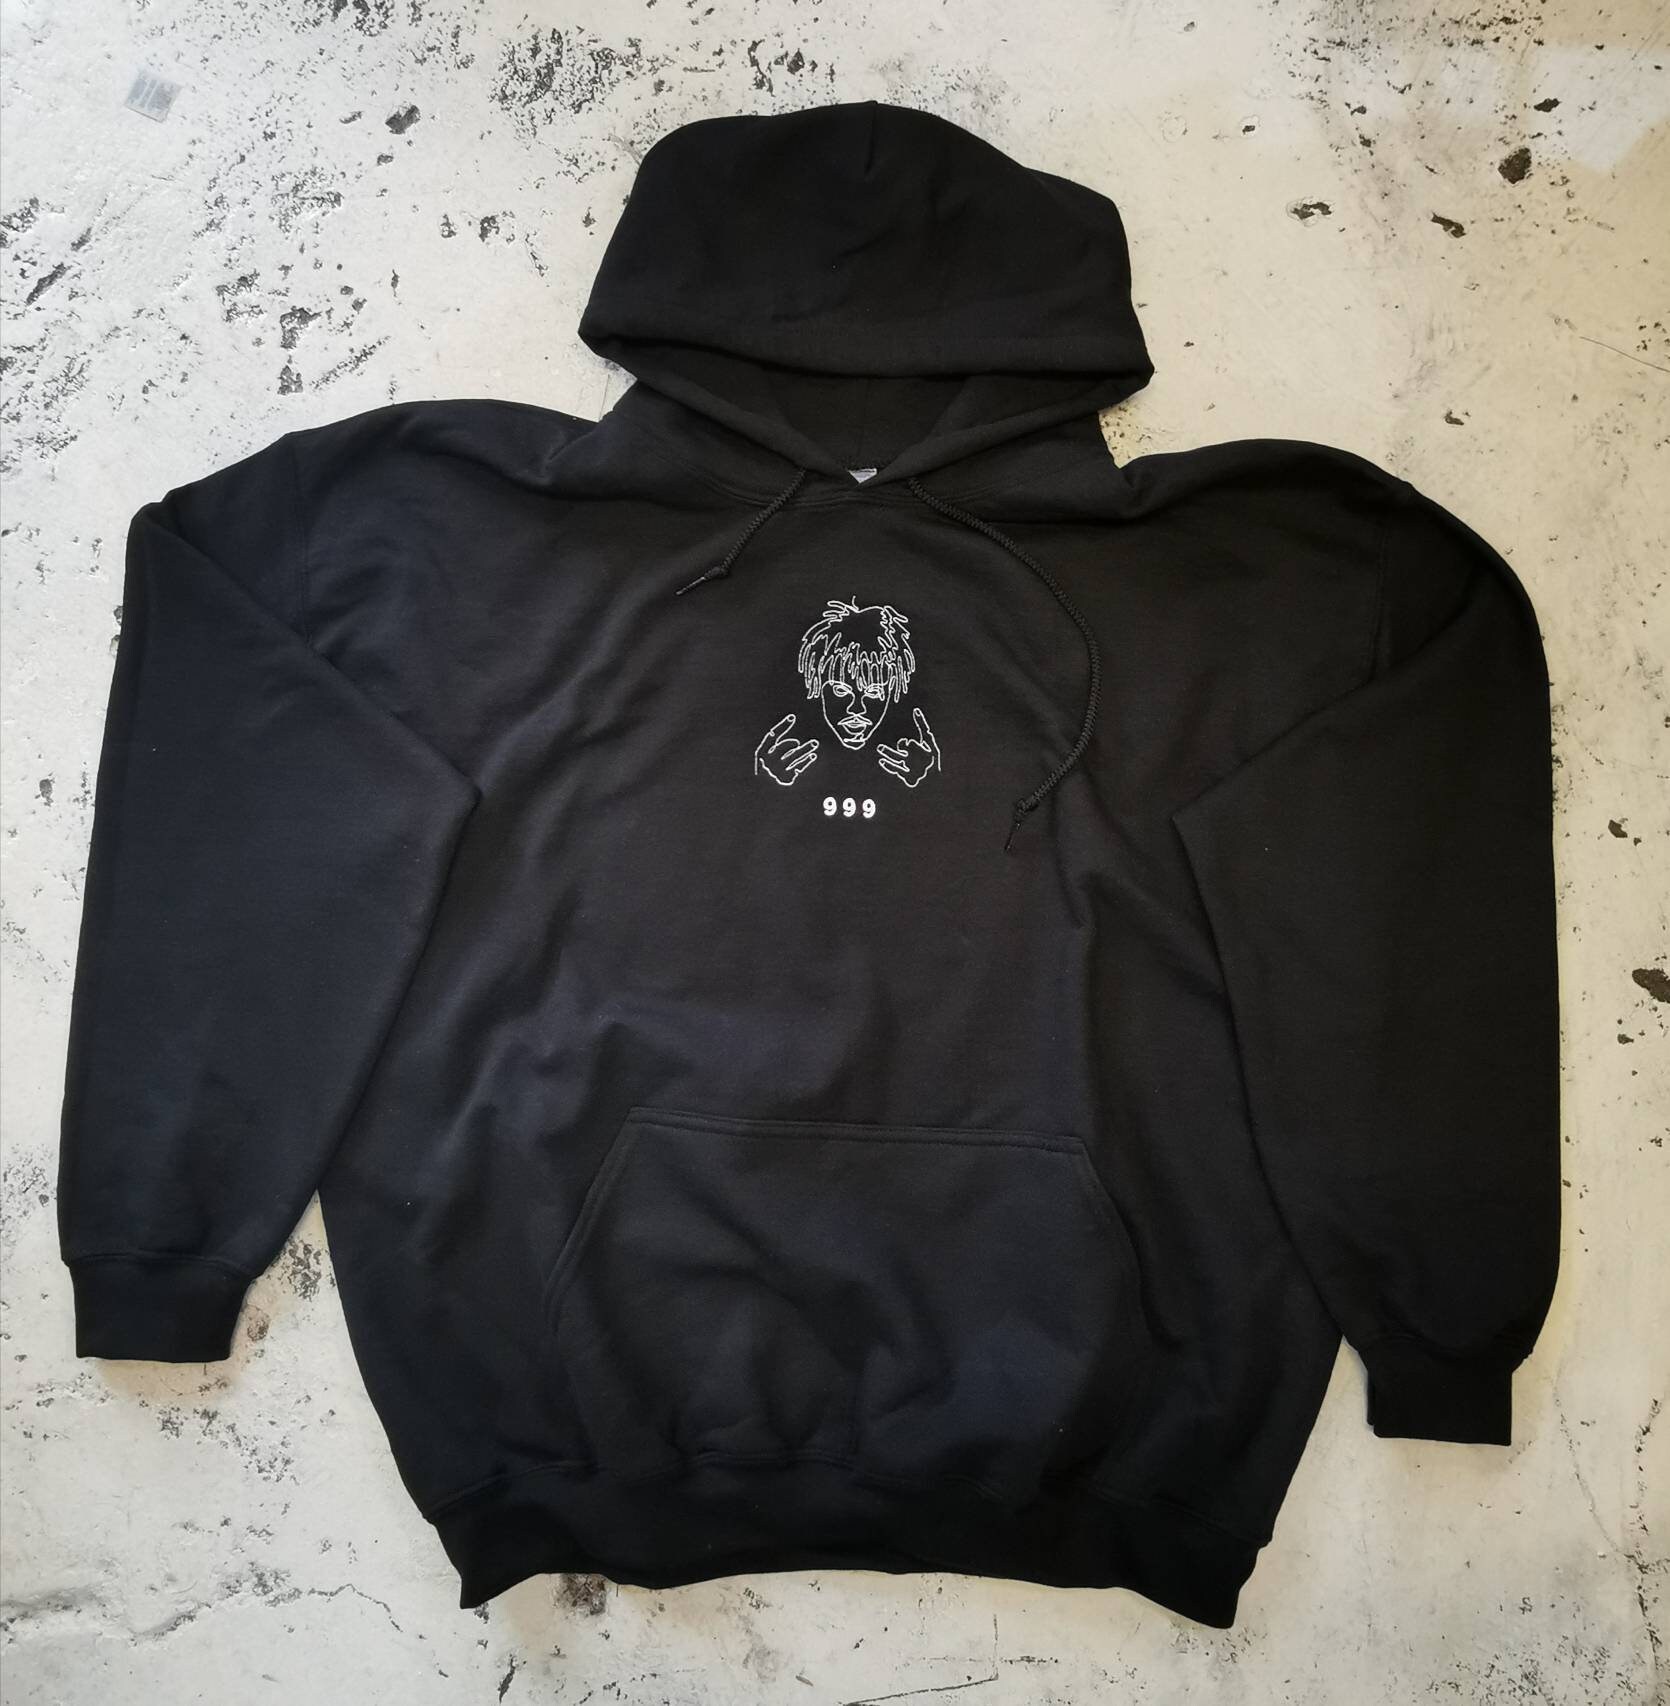 999 Juice Wrld embroidered hoodie. | Etsy